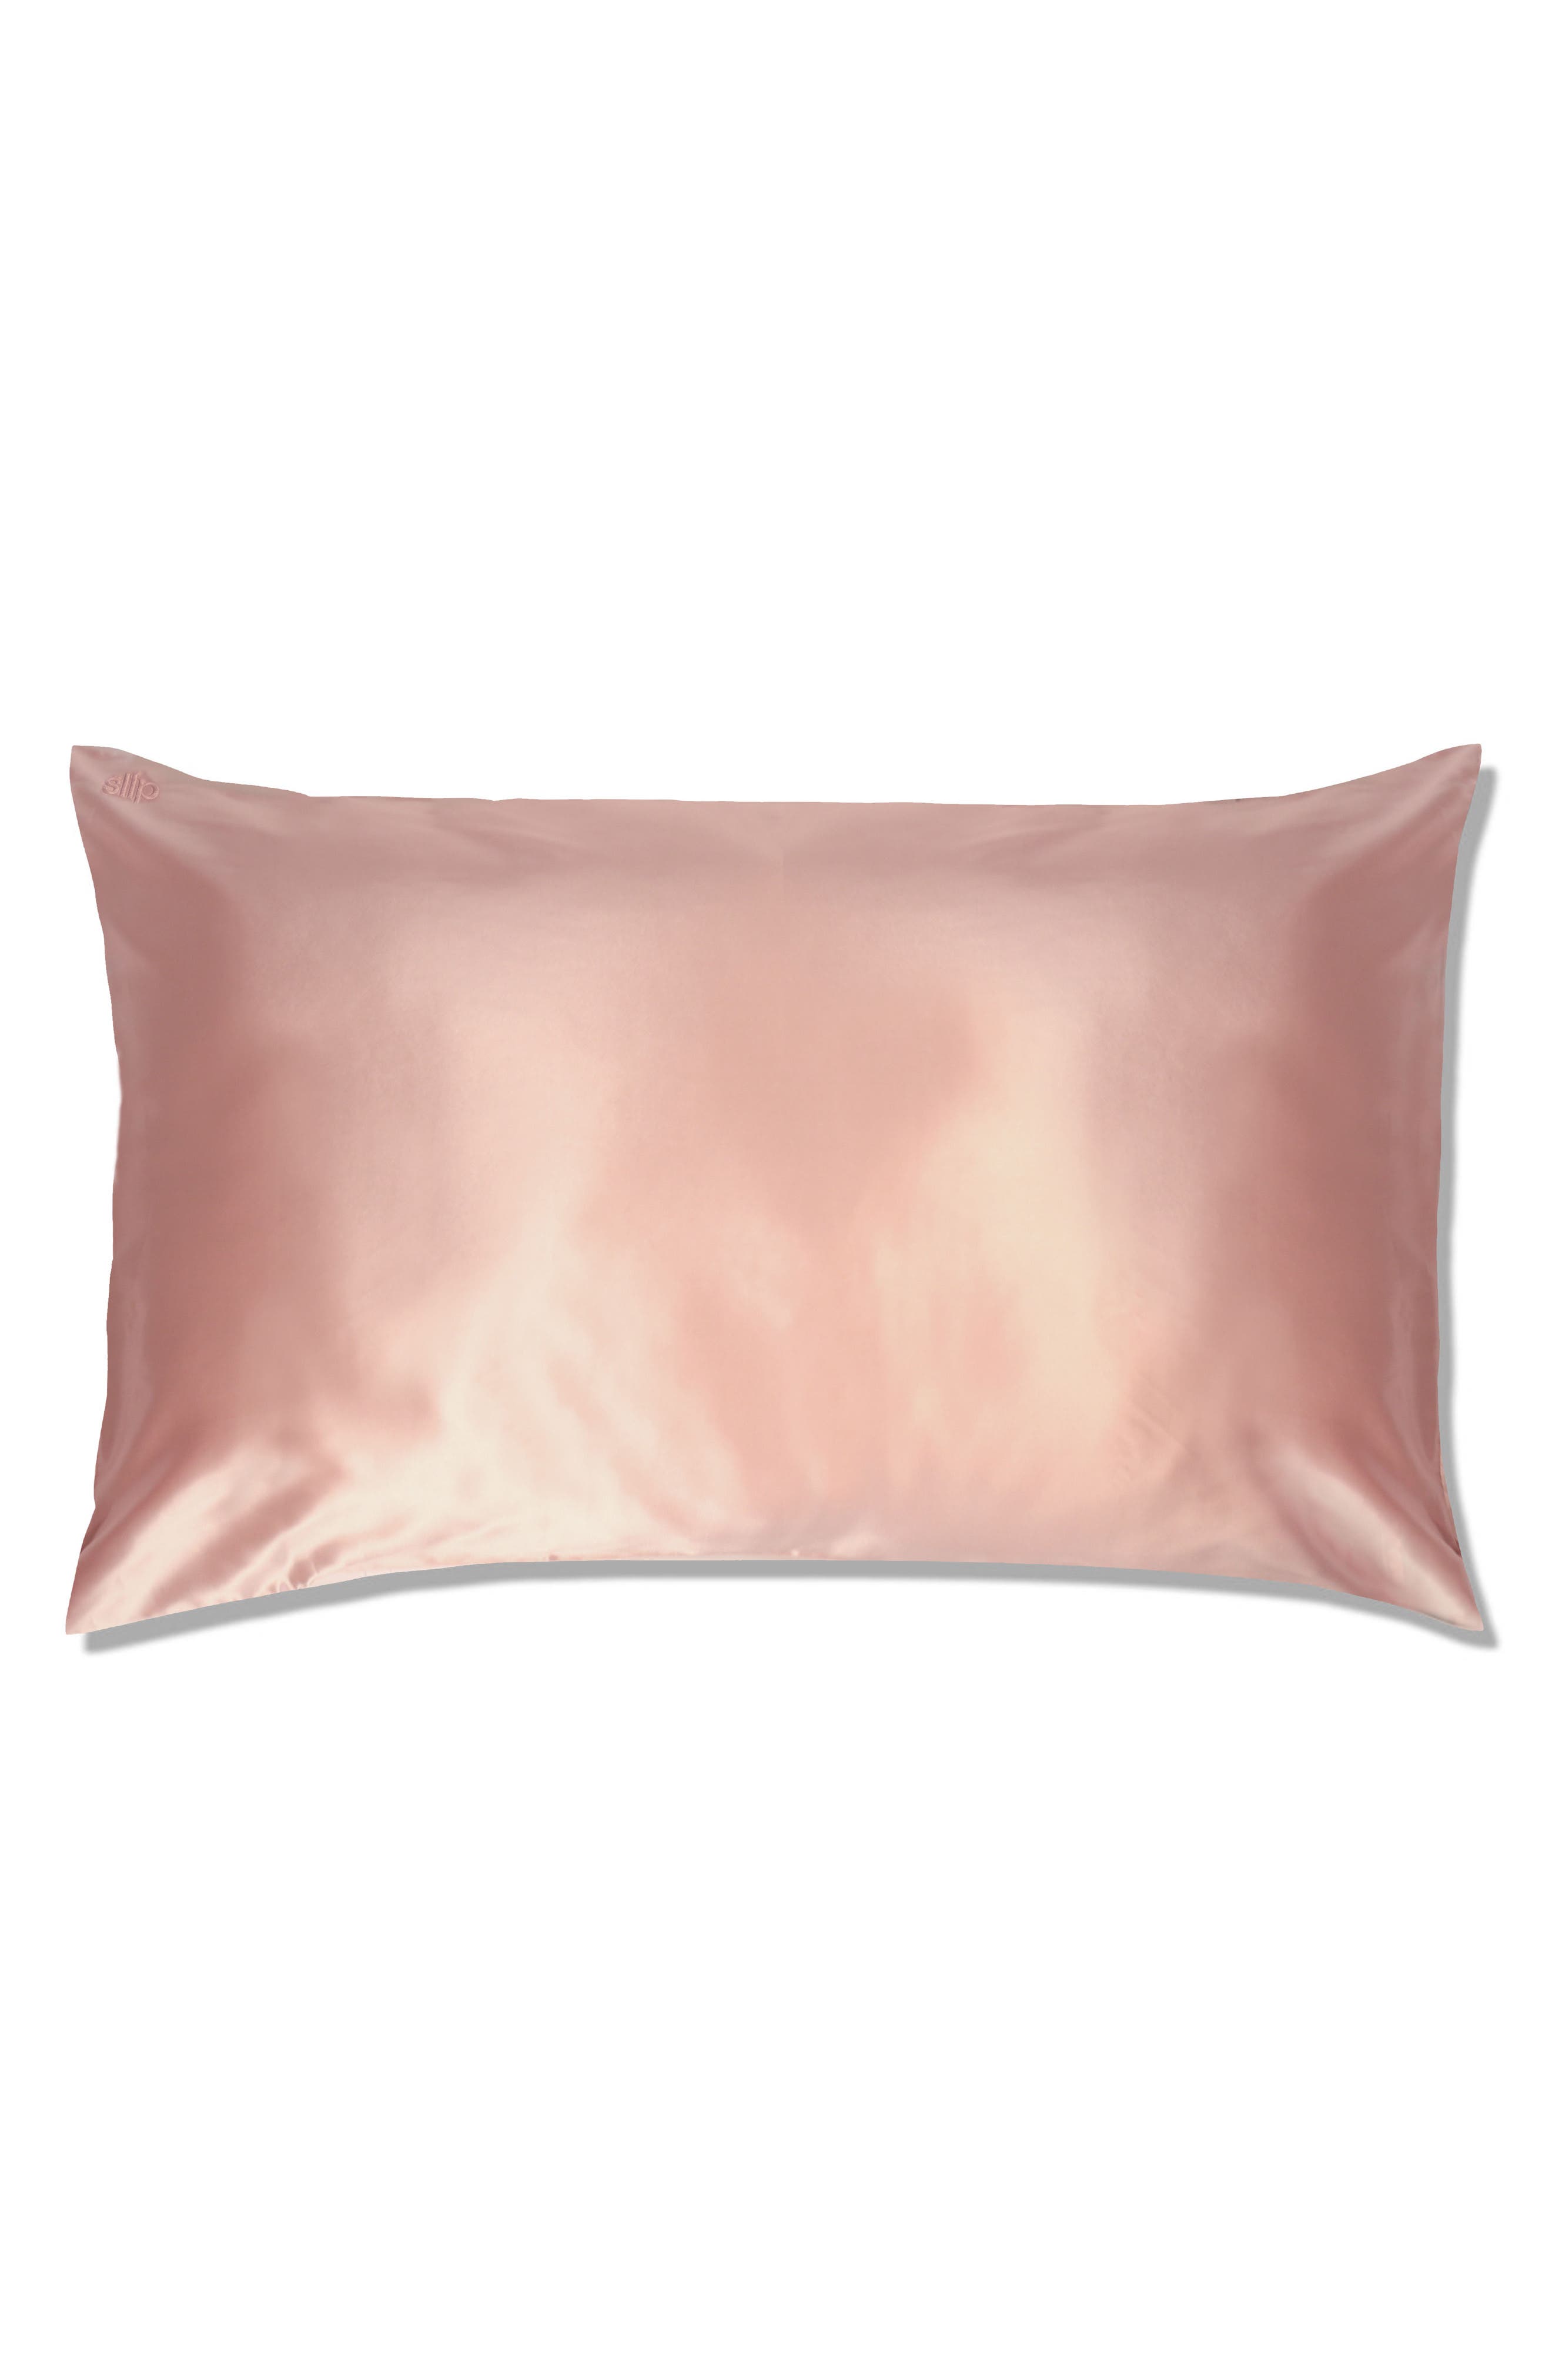 silk pillows cases